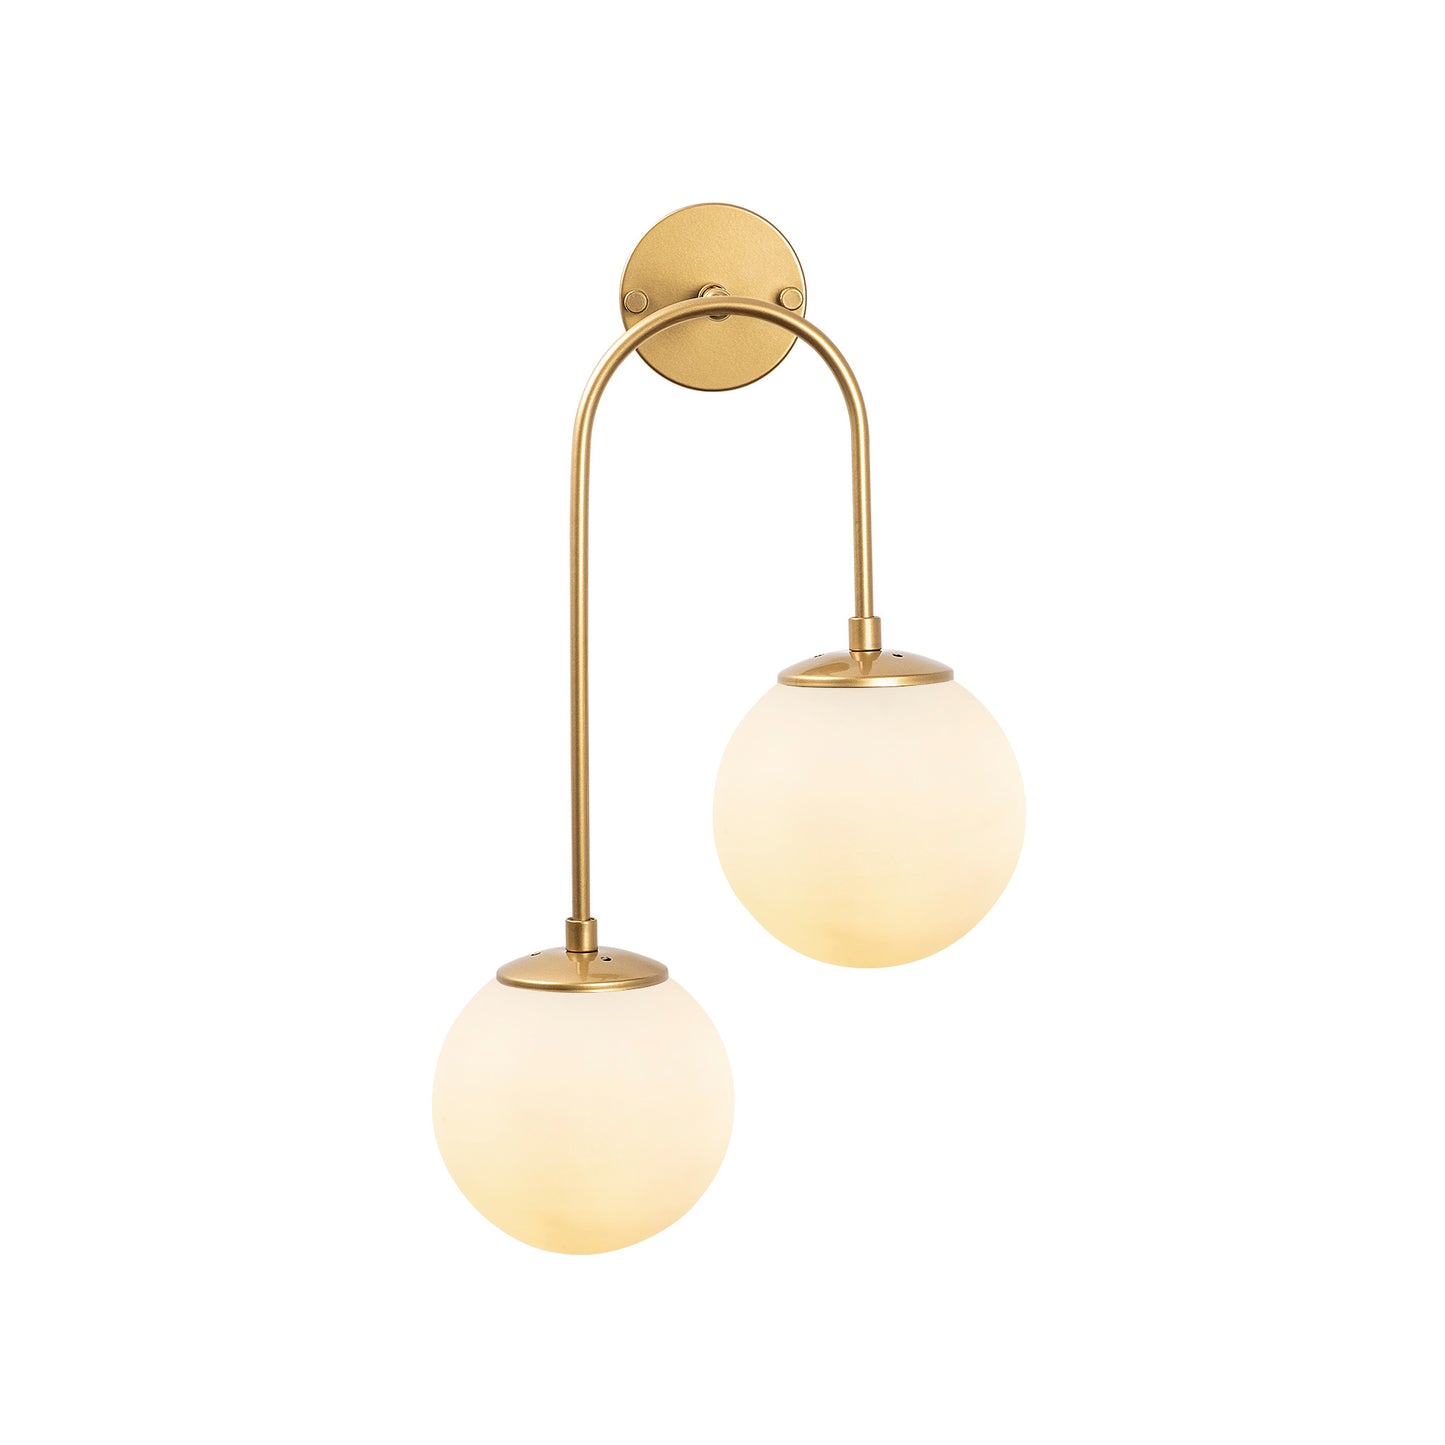 Væglampe Jewel - 10585 - Hvid og guldfarvet